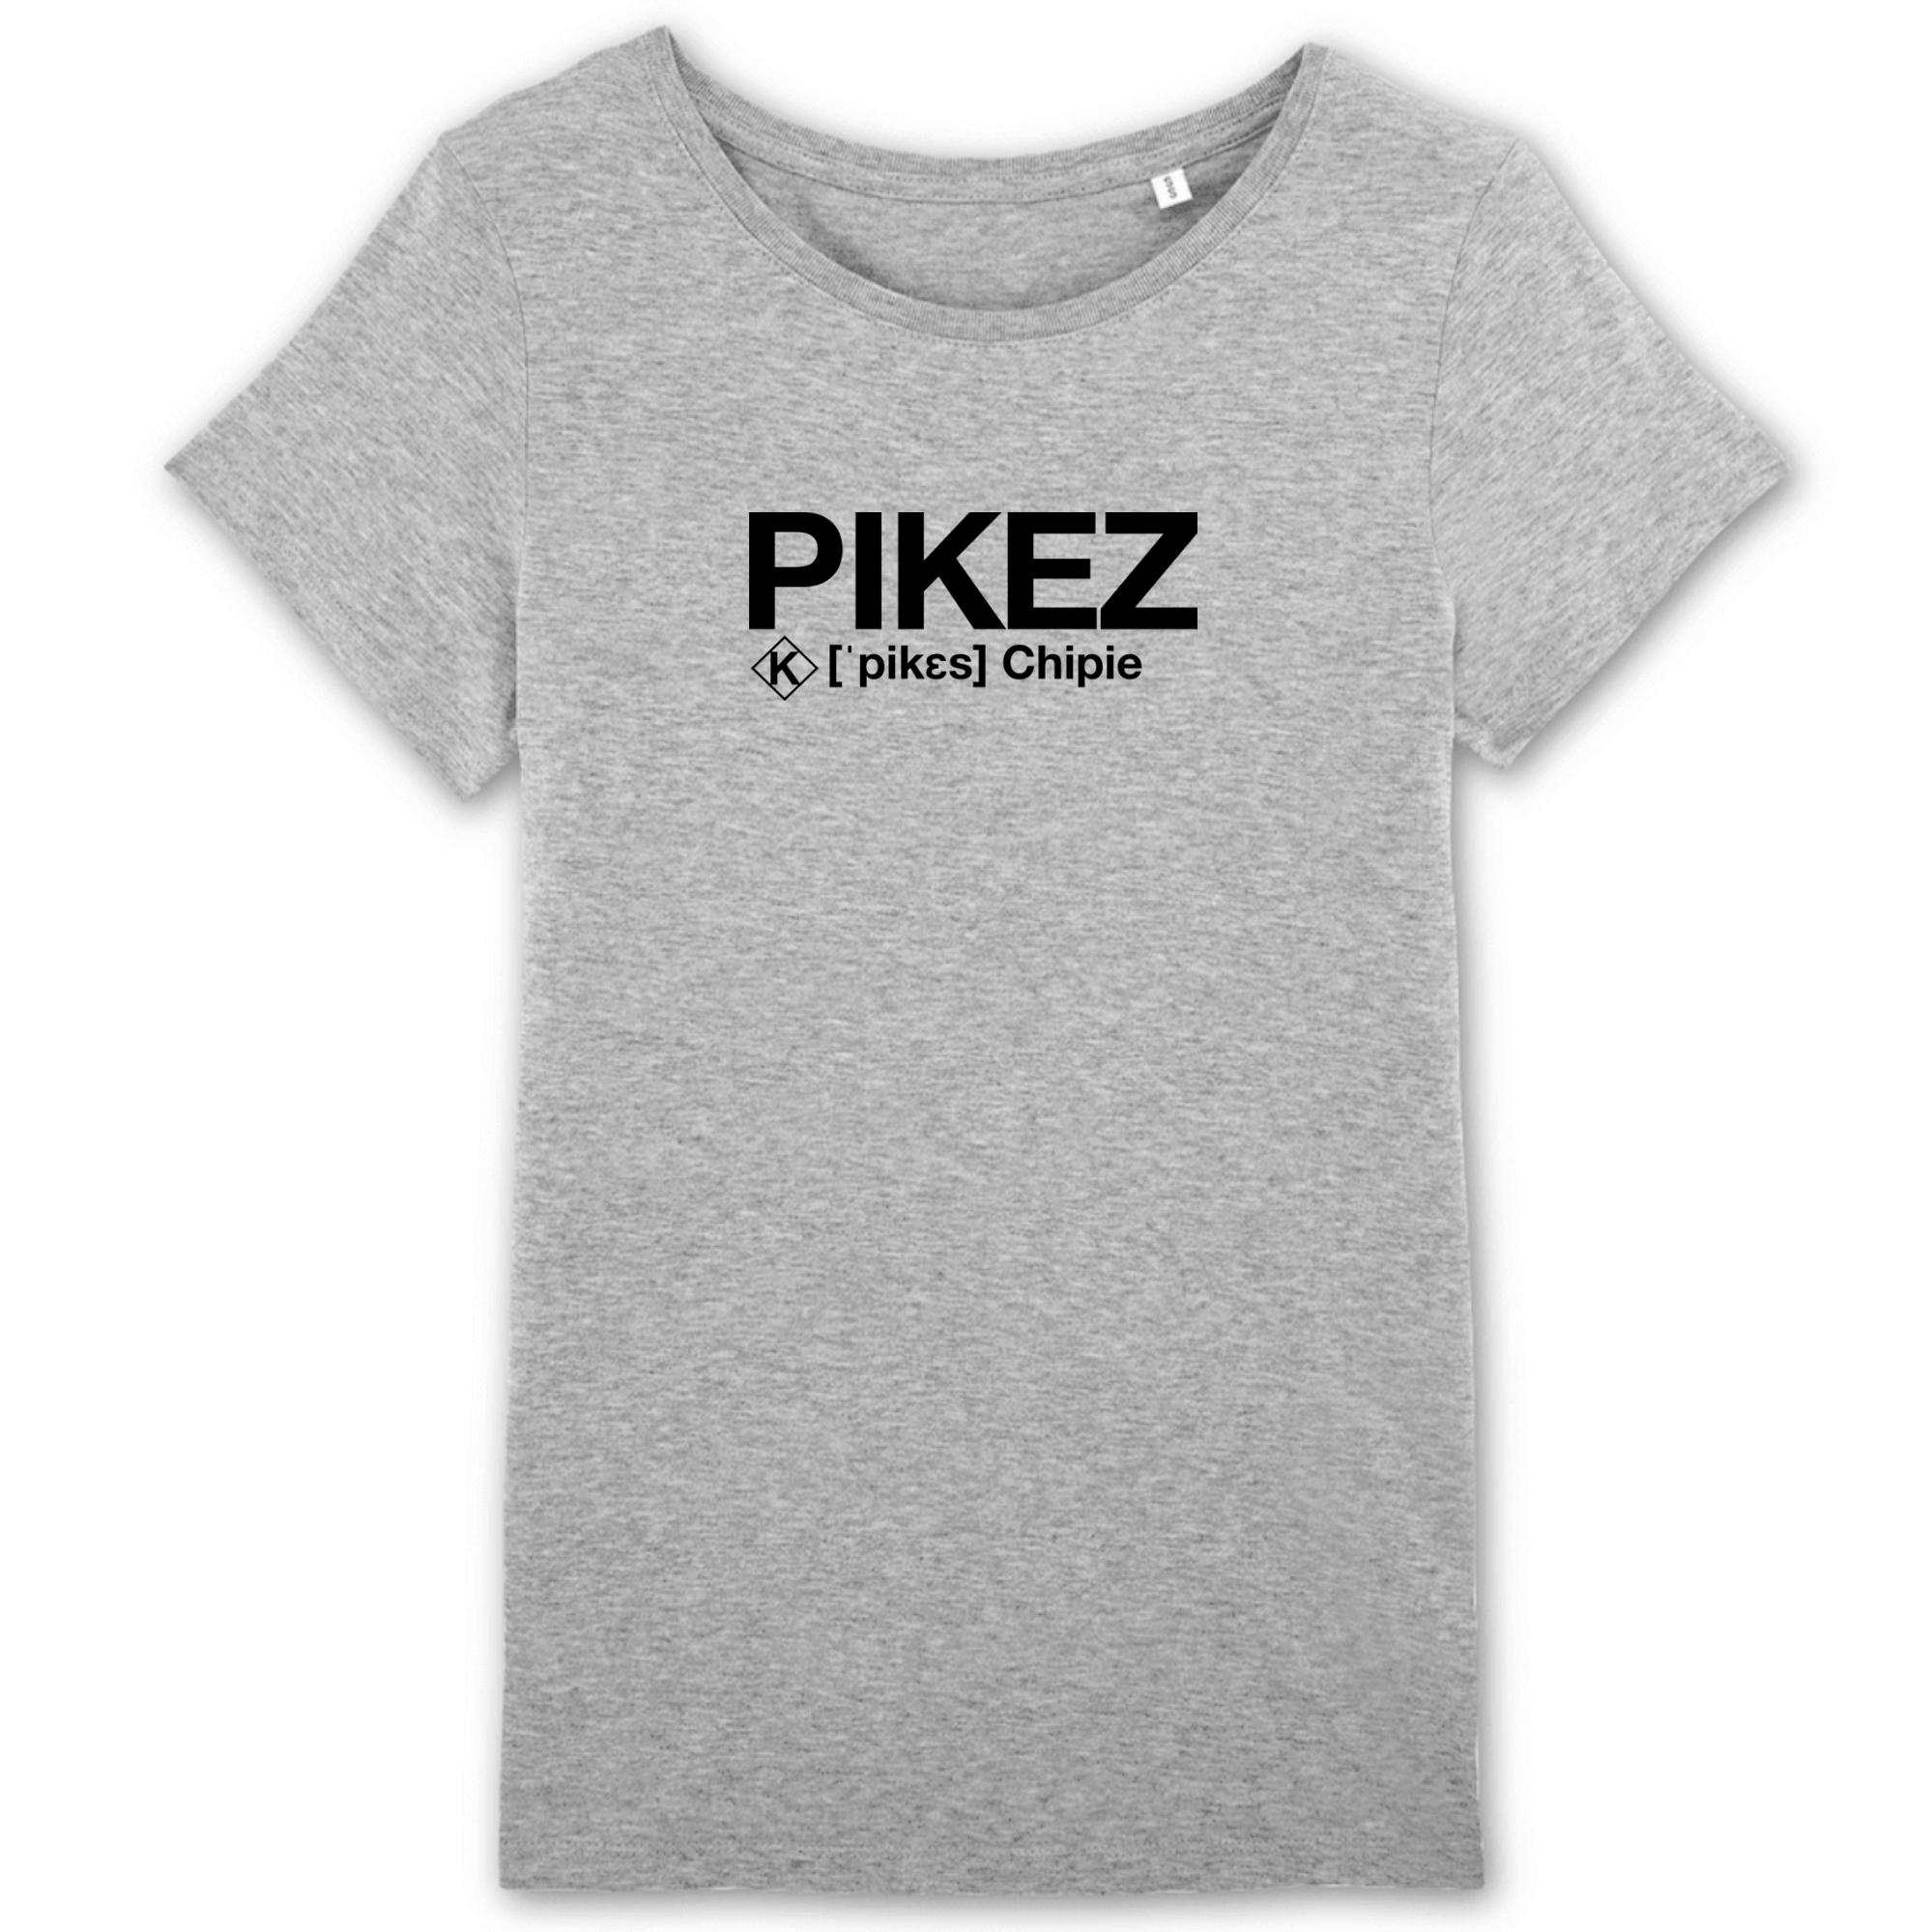 Pikez T-shirt (Chipie)